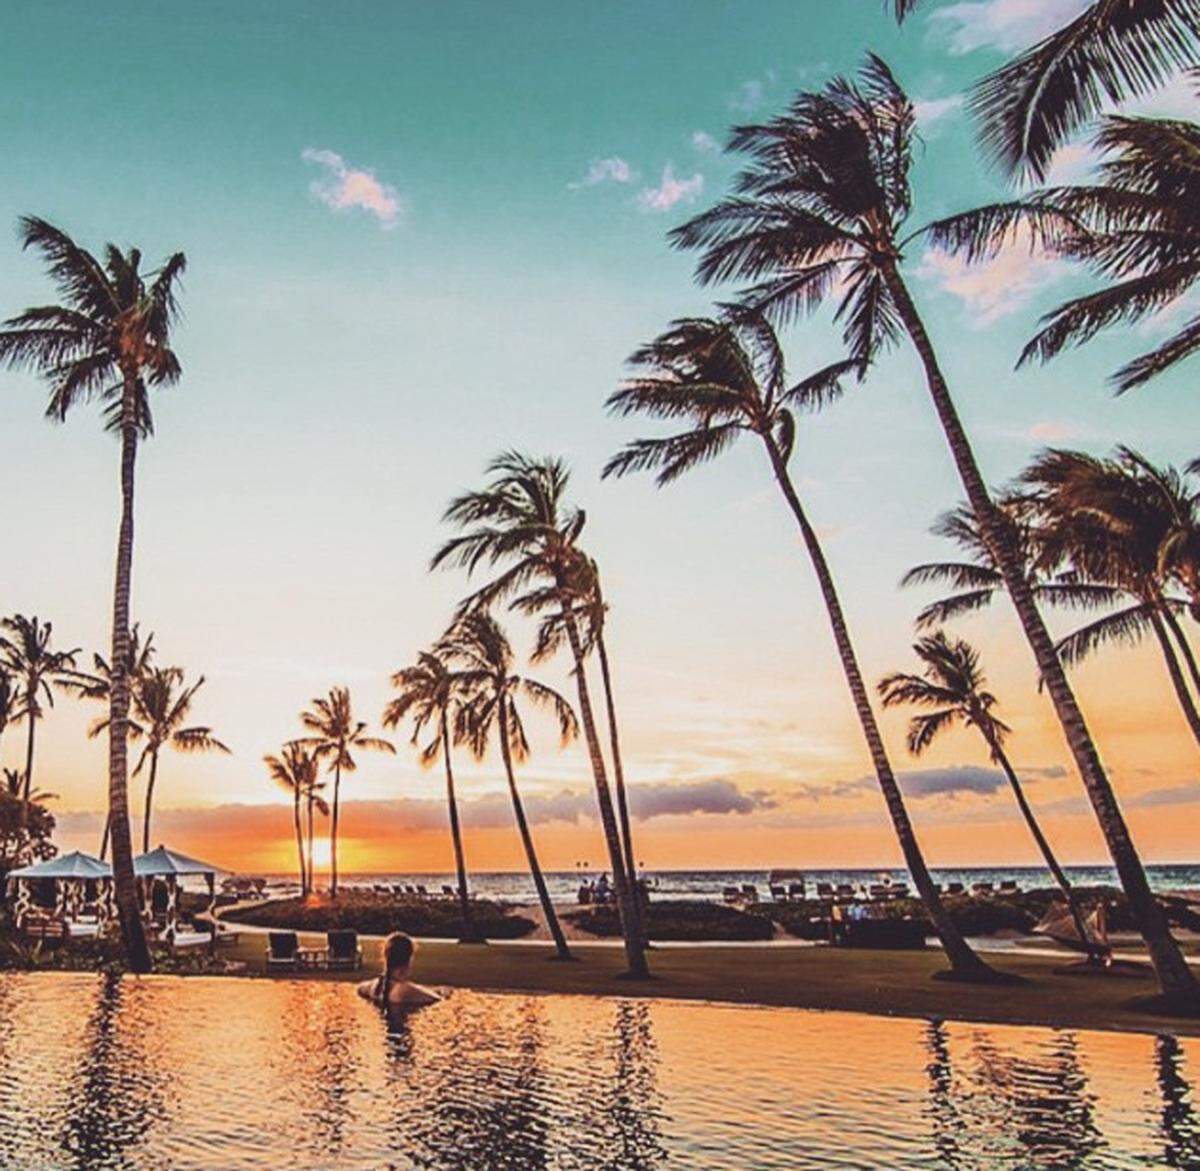 Das traditionell hawaiianische Hotel wurde auf schwarzen Lavasteinen erbaut. Vom Pool aus ist nicht nur ein herrlicher Ausblick auf Meer und Palmen, sondern auch auf den Sonnenuntergang möglich.